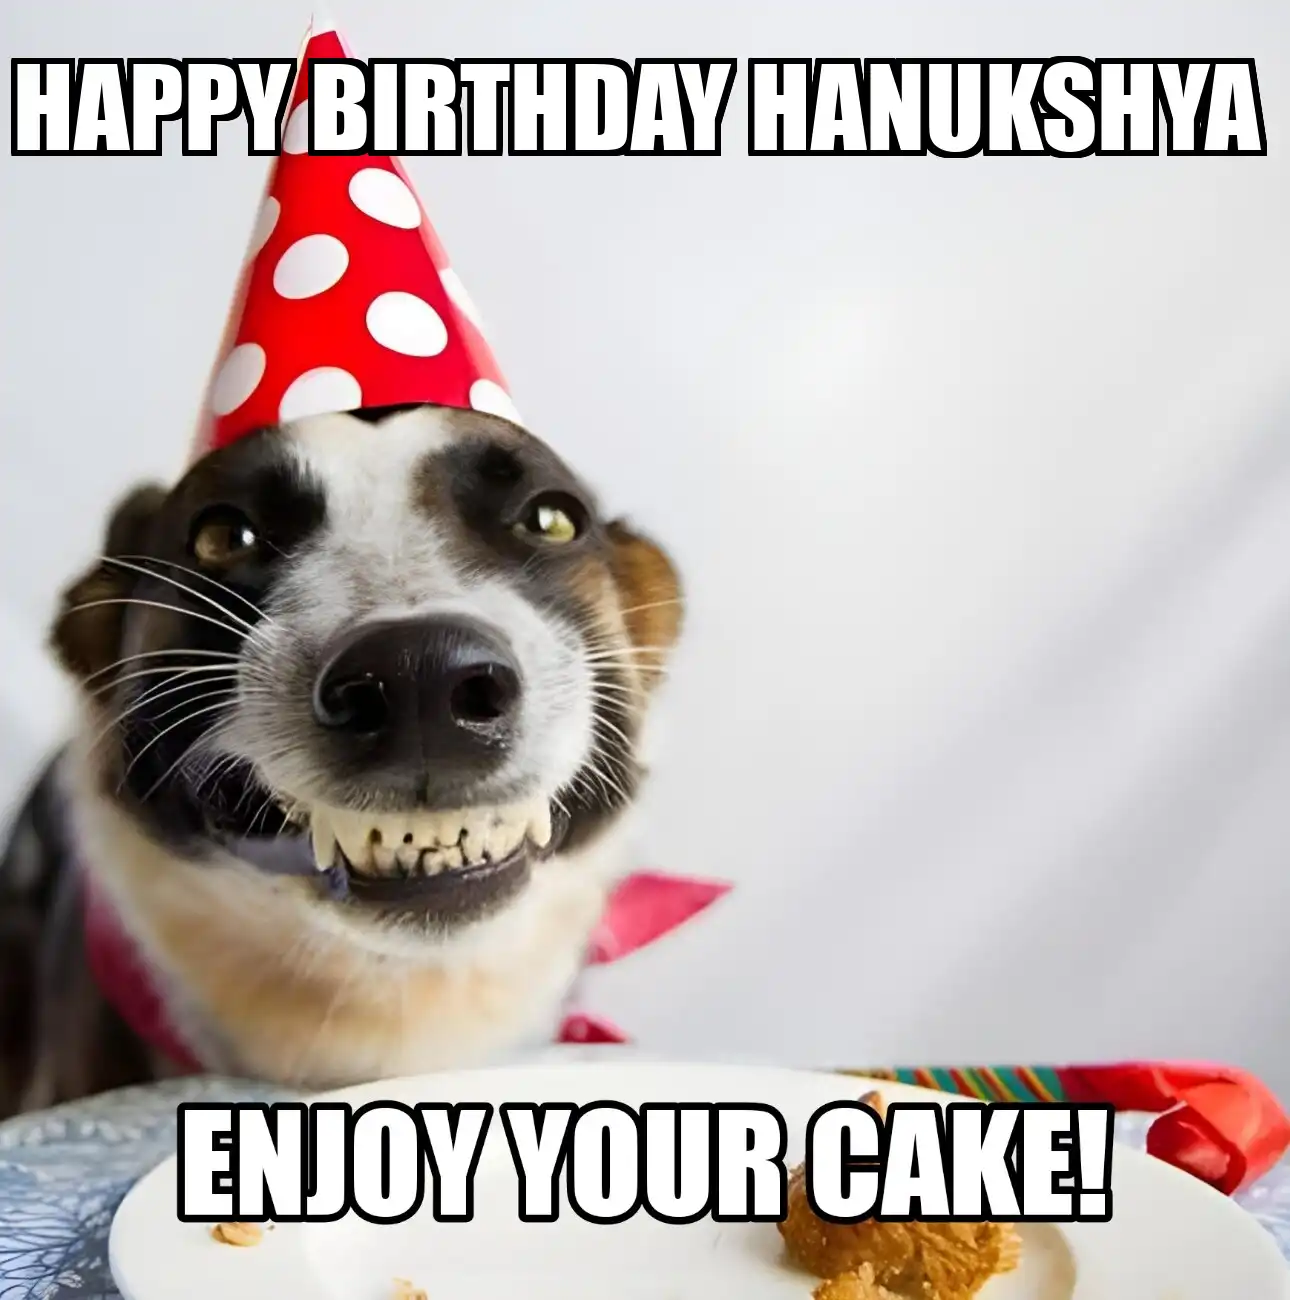 Happy Birthday Hanukshya Enjoy Your Cake Dog Meme